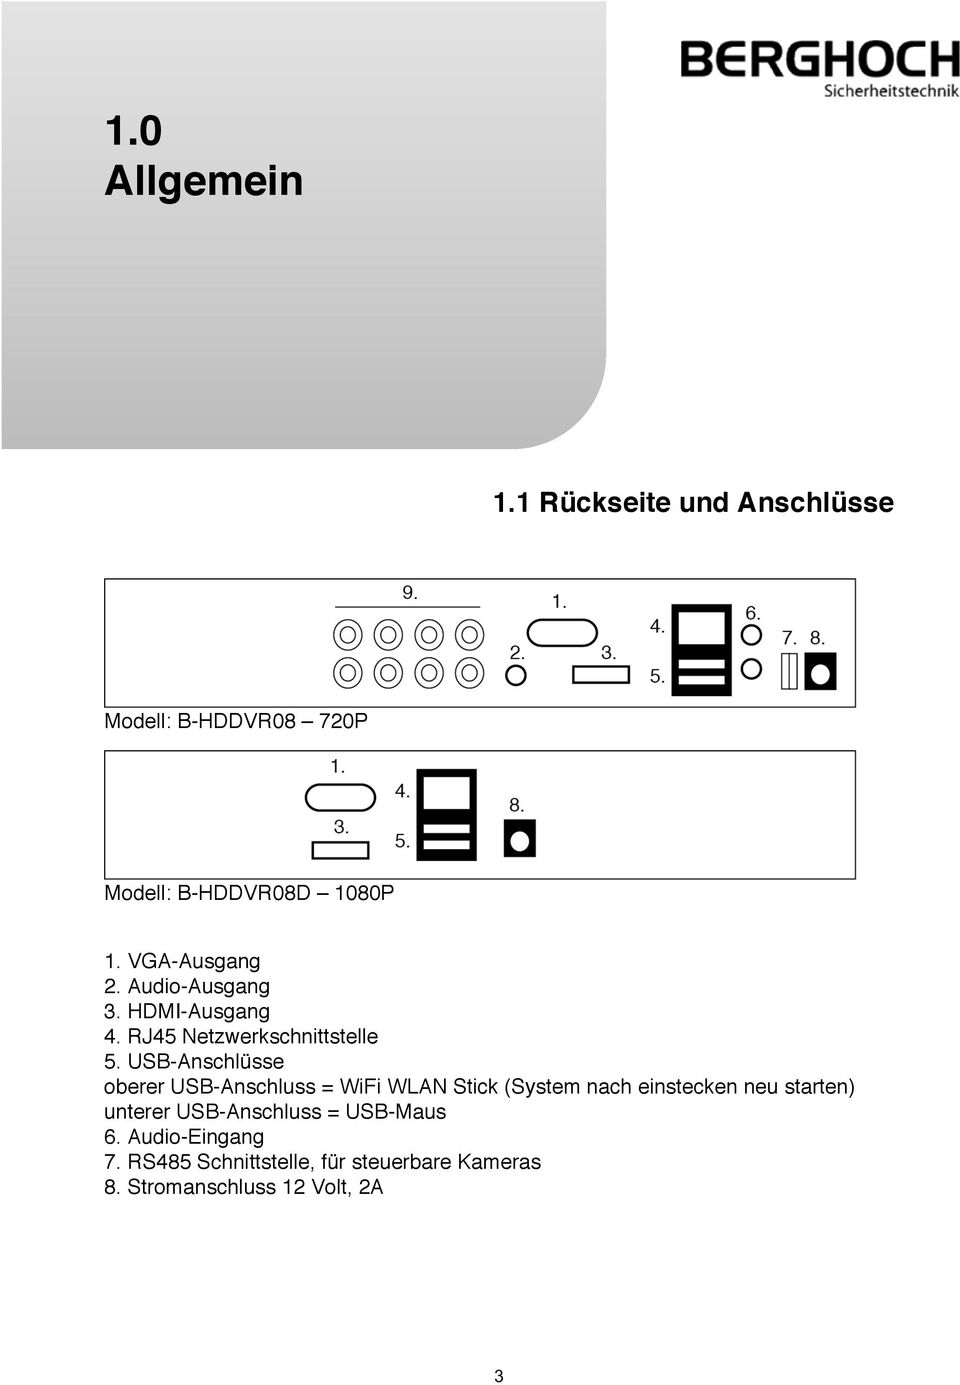 USB-Anschlüsse oberer USB-Anschluss = WiFi WLAN Stick (System nach einstecken neu starten)